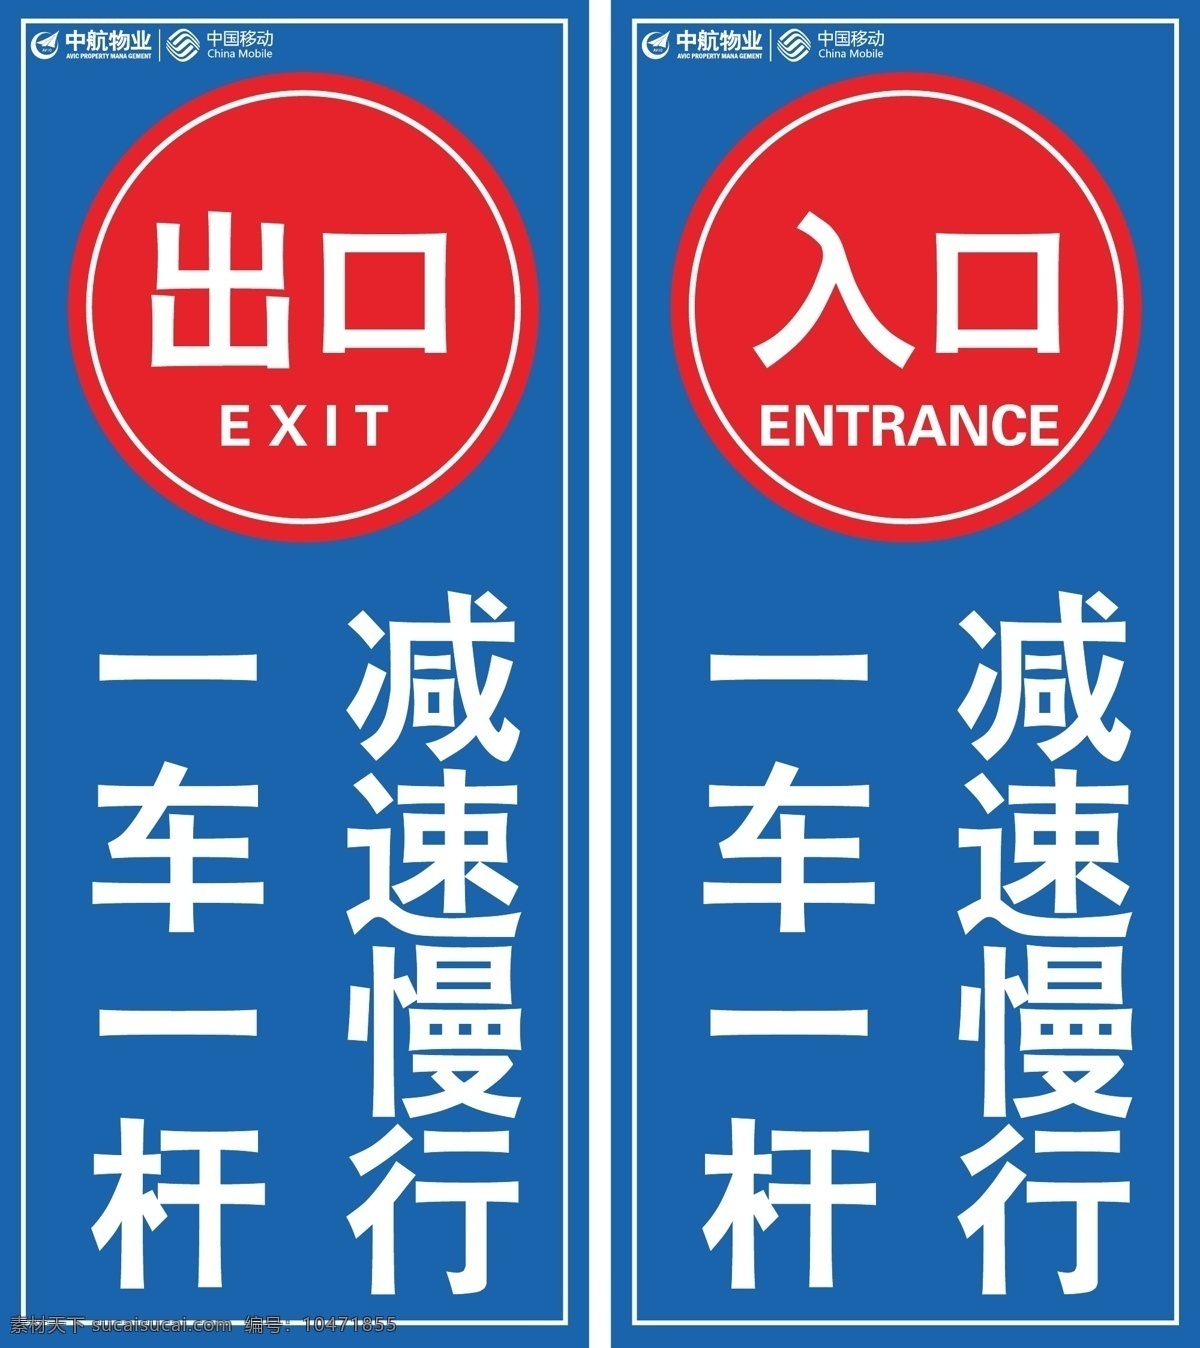 车库 出口 入口 标识 一车一杆 减速慢行 出口标志 入口标识 标志图标 公共标识标志